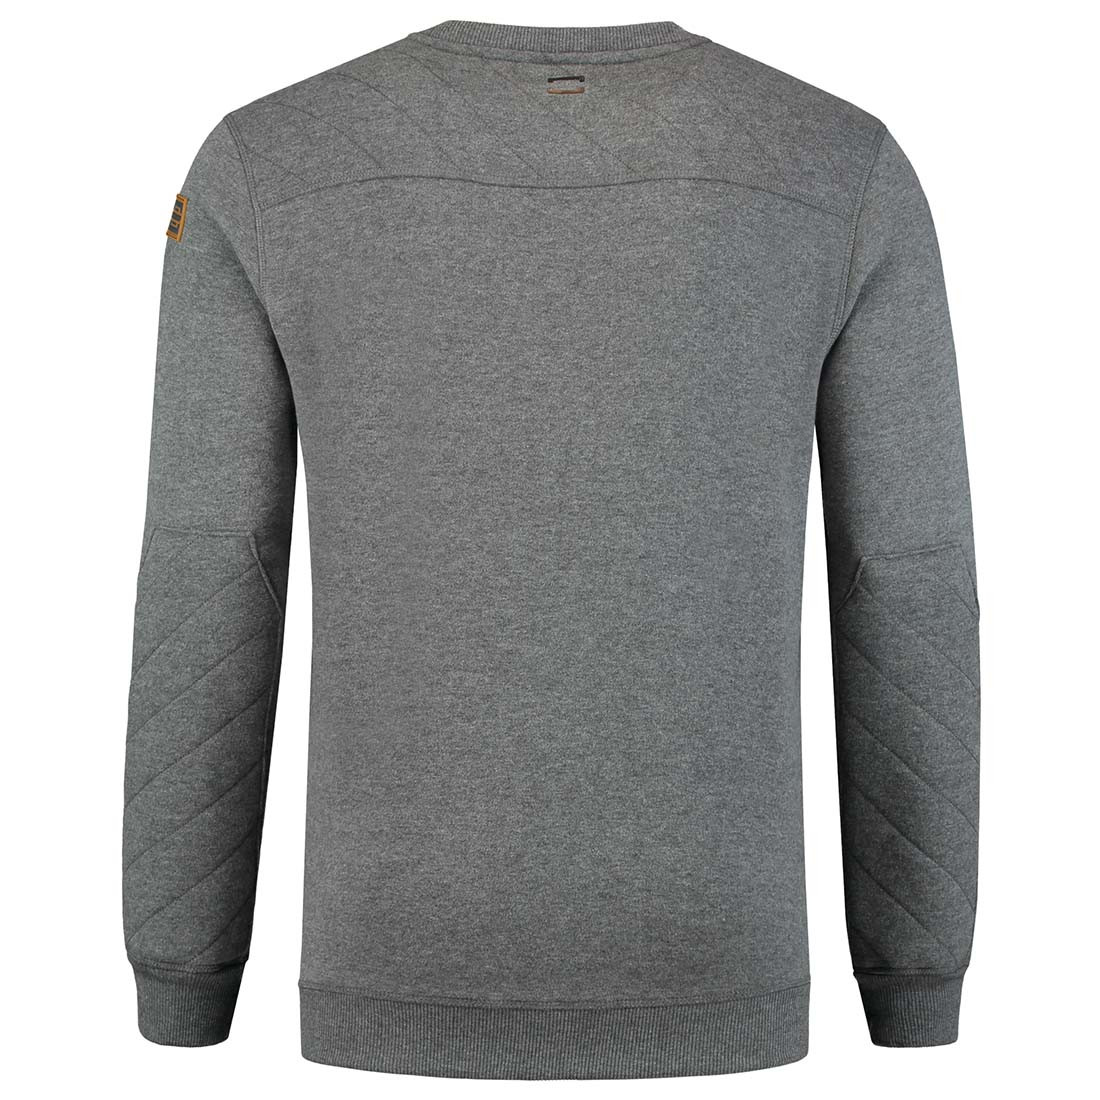 PREMIUM Men's Sweatshirt - Safetywear